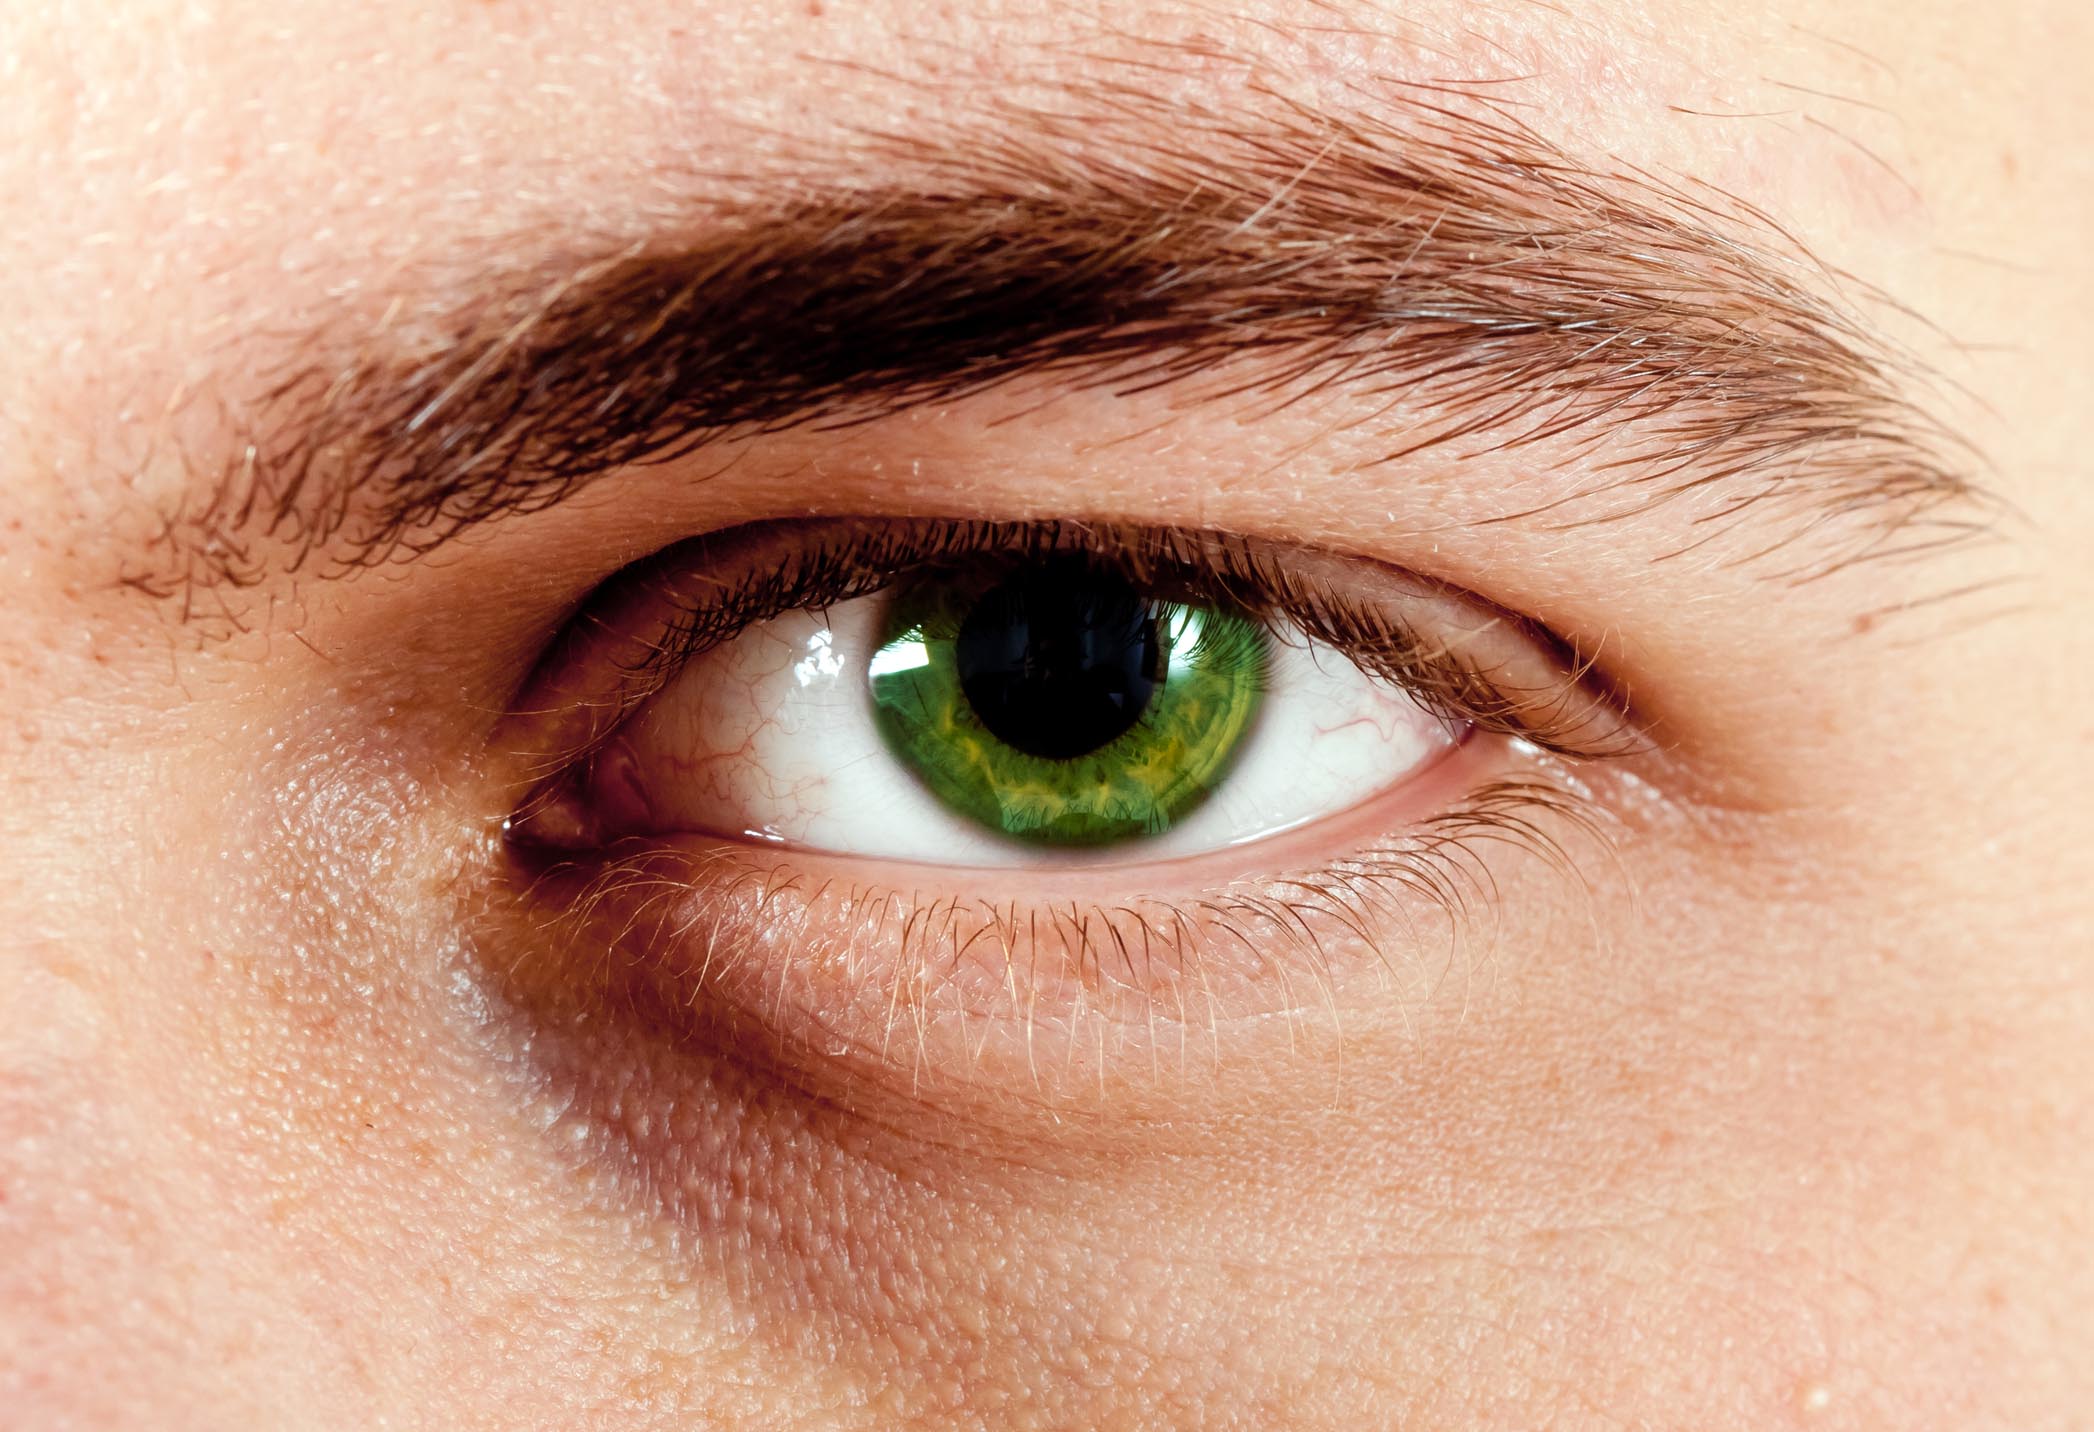 صور عيون خضر , الصفات الشخصيه لاصحاب العيون الخضراء - المنام